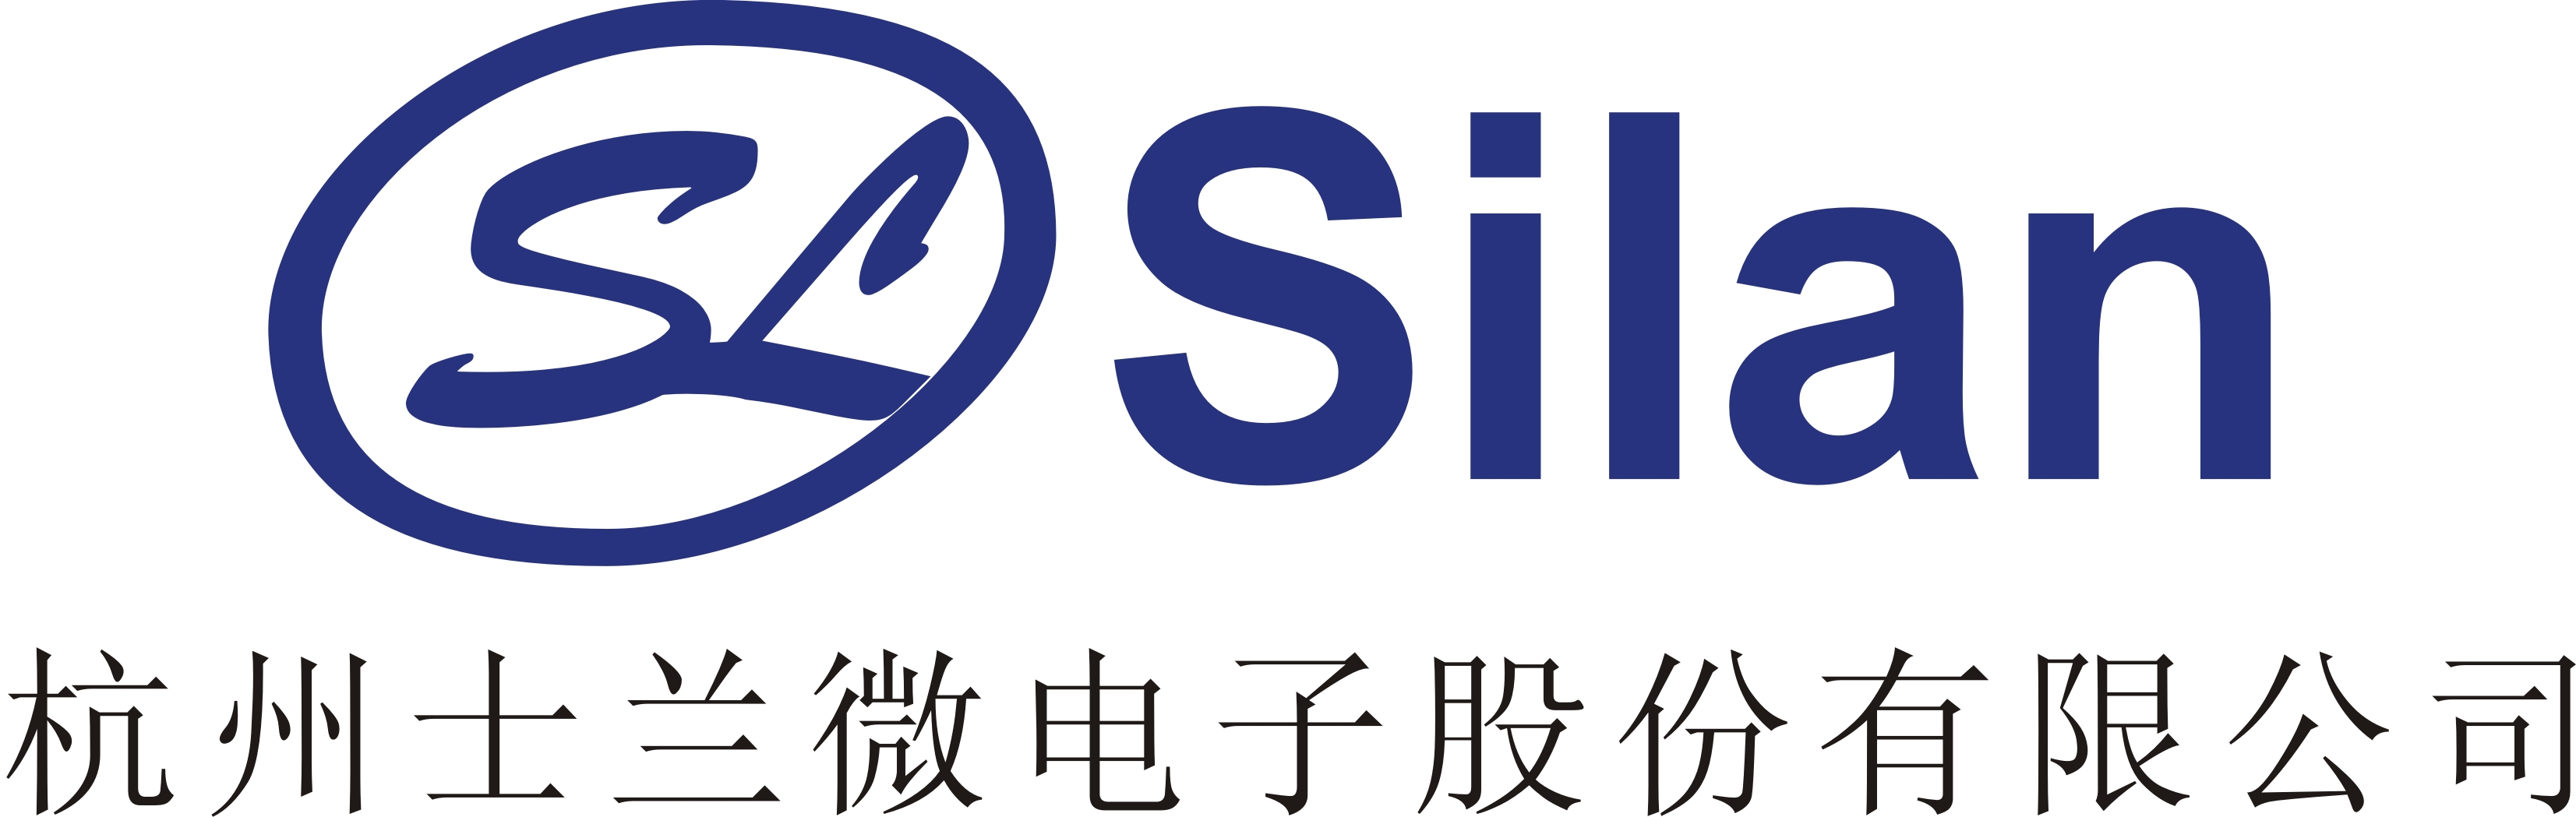 杭州市士兰微电子股份有限公司logo